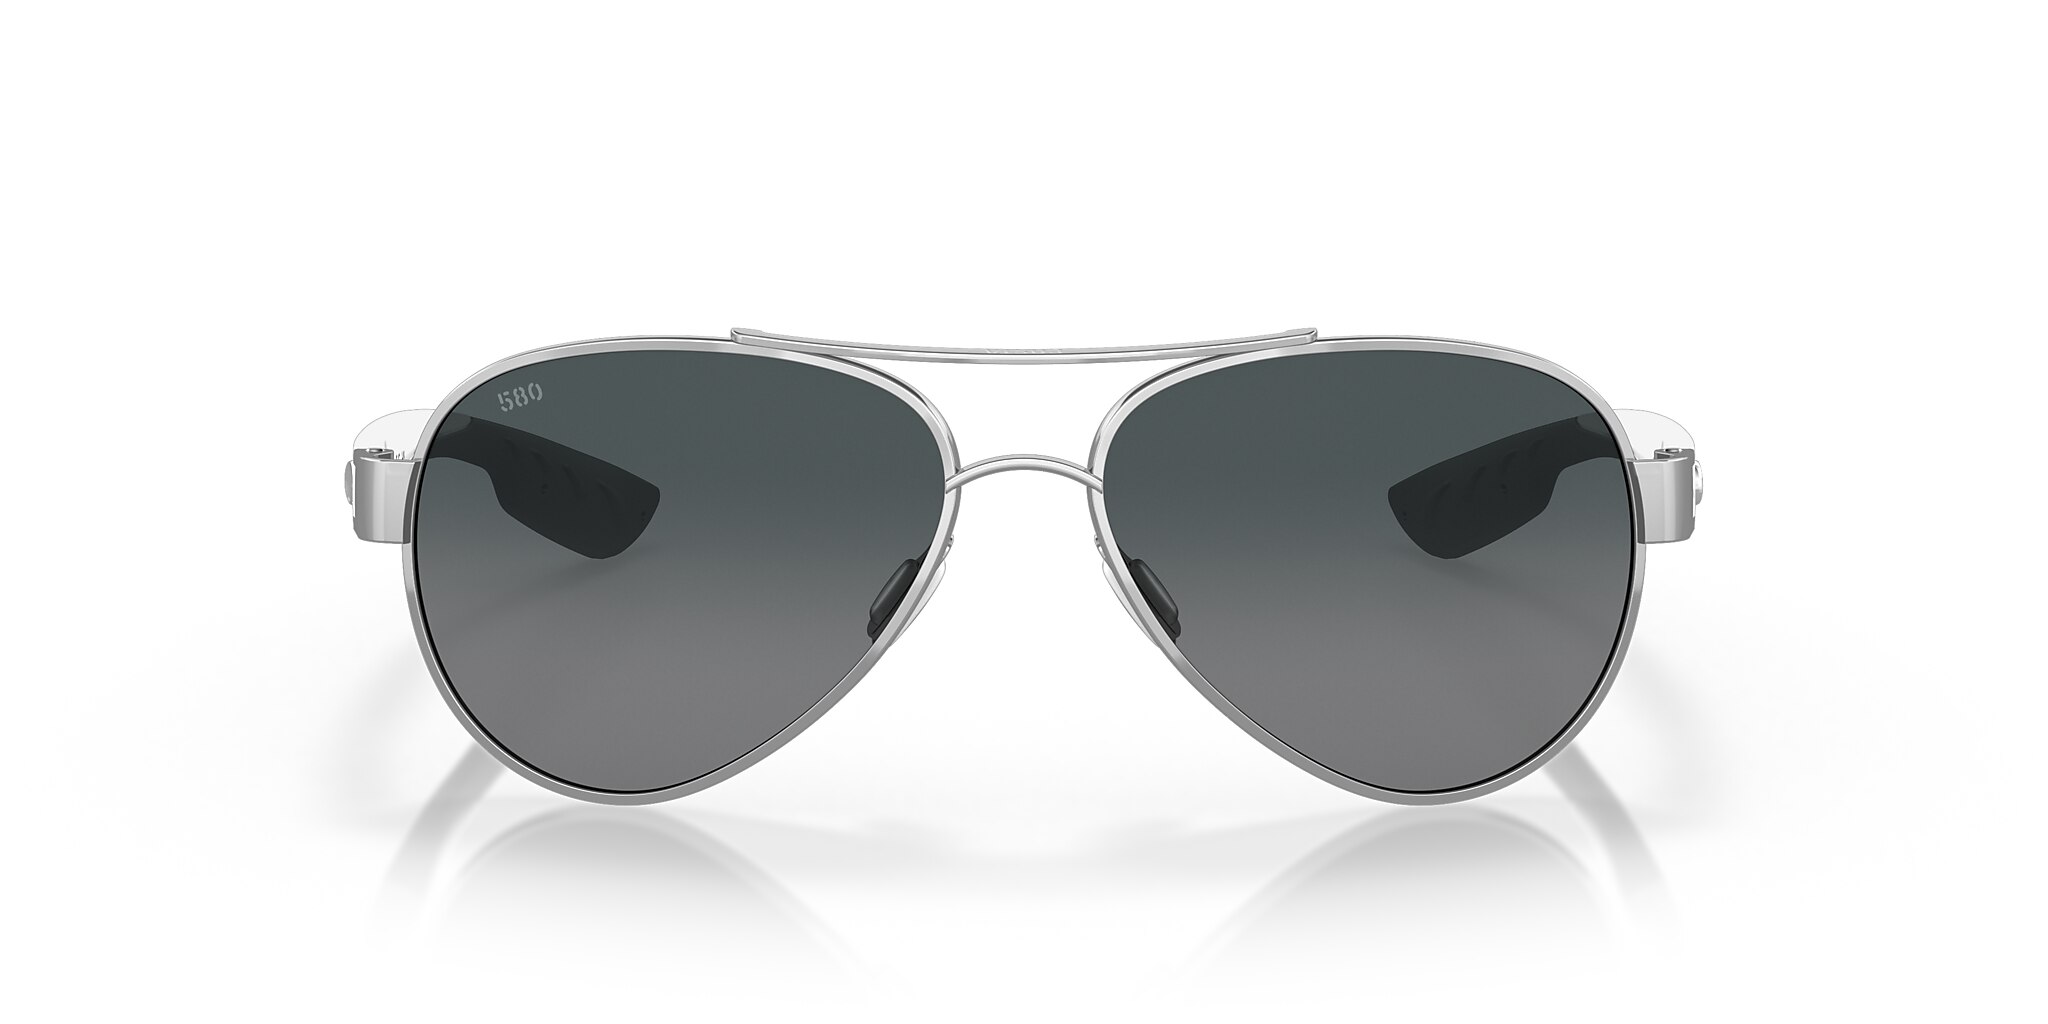 Loreto Polarized Sunglasses in Gray Gradient | Costa Del Mar®